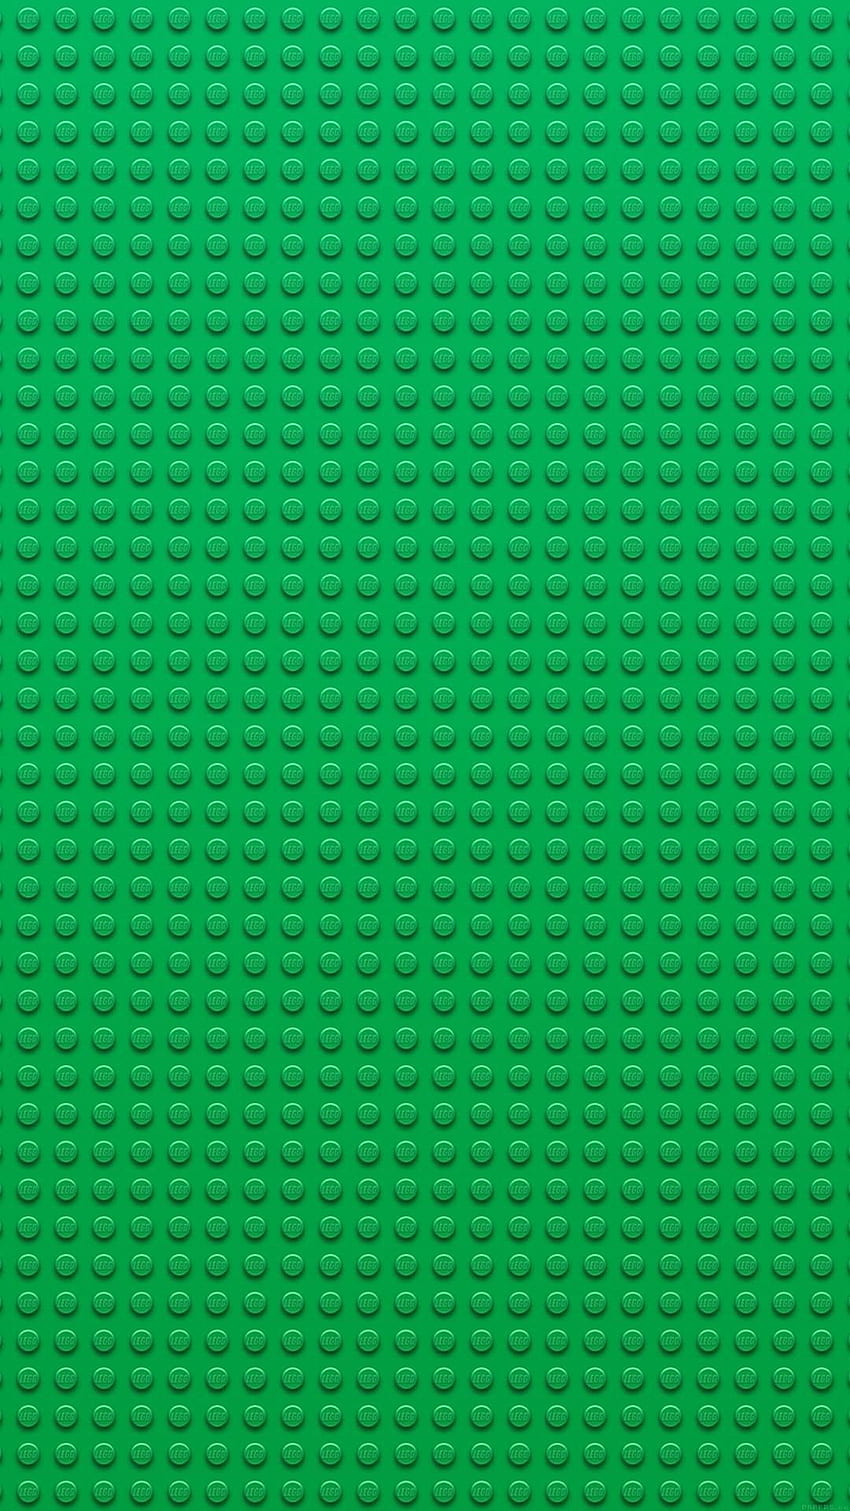 Blok Lego, Batu Bata LEGO wallpaper ponsel HD